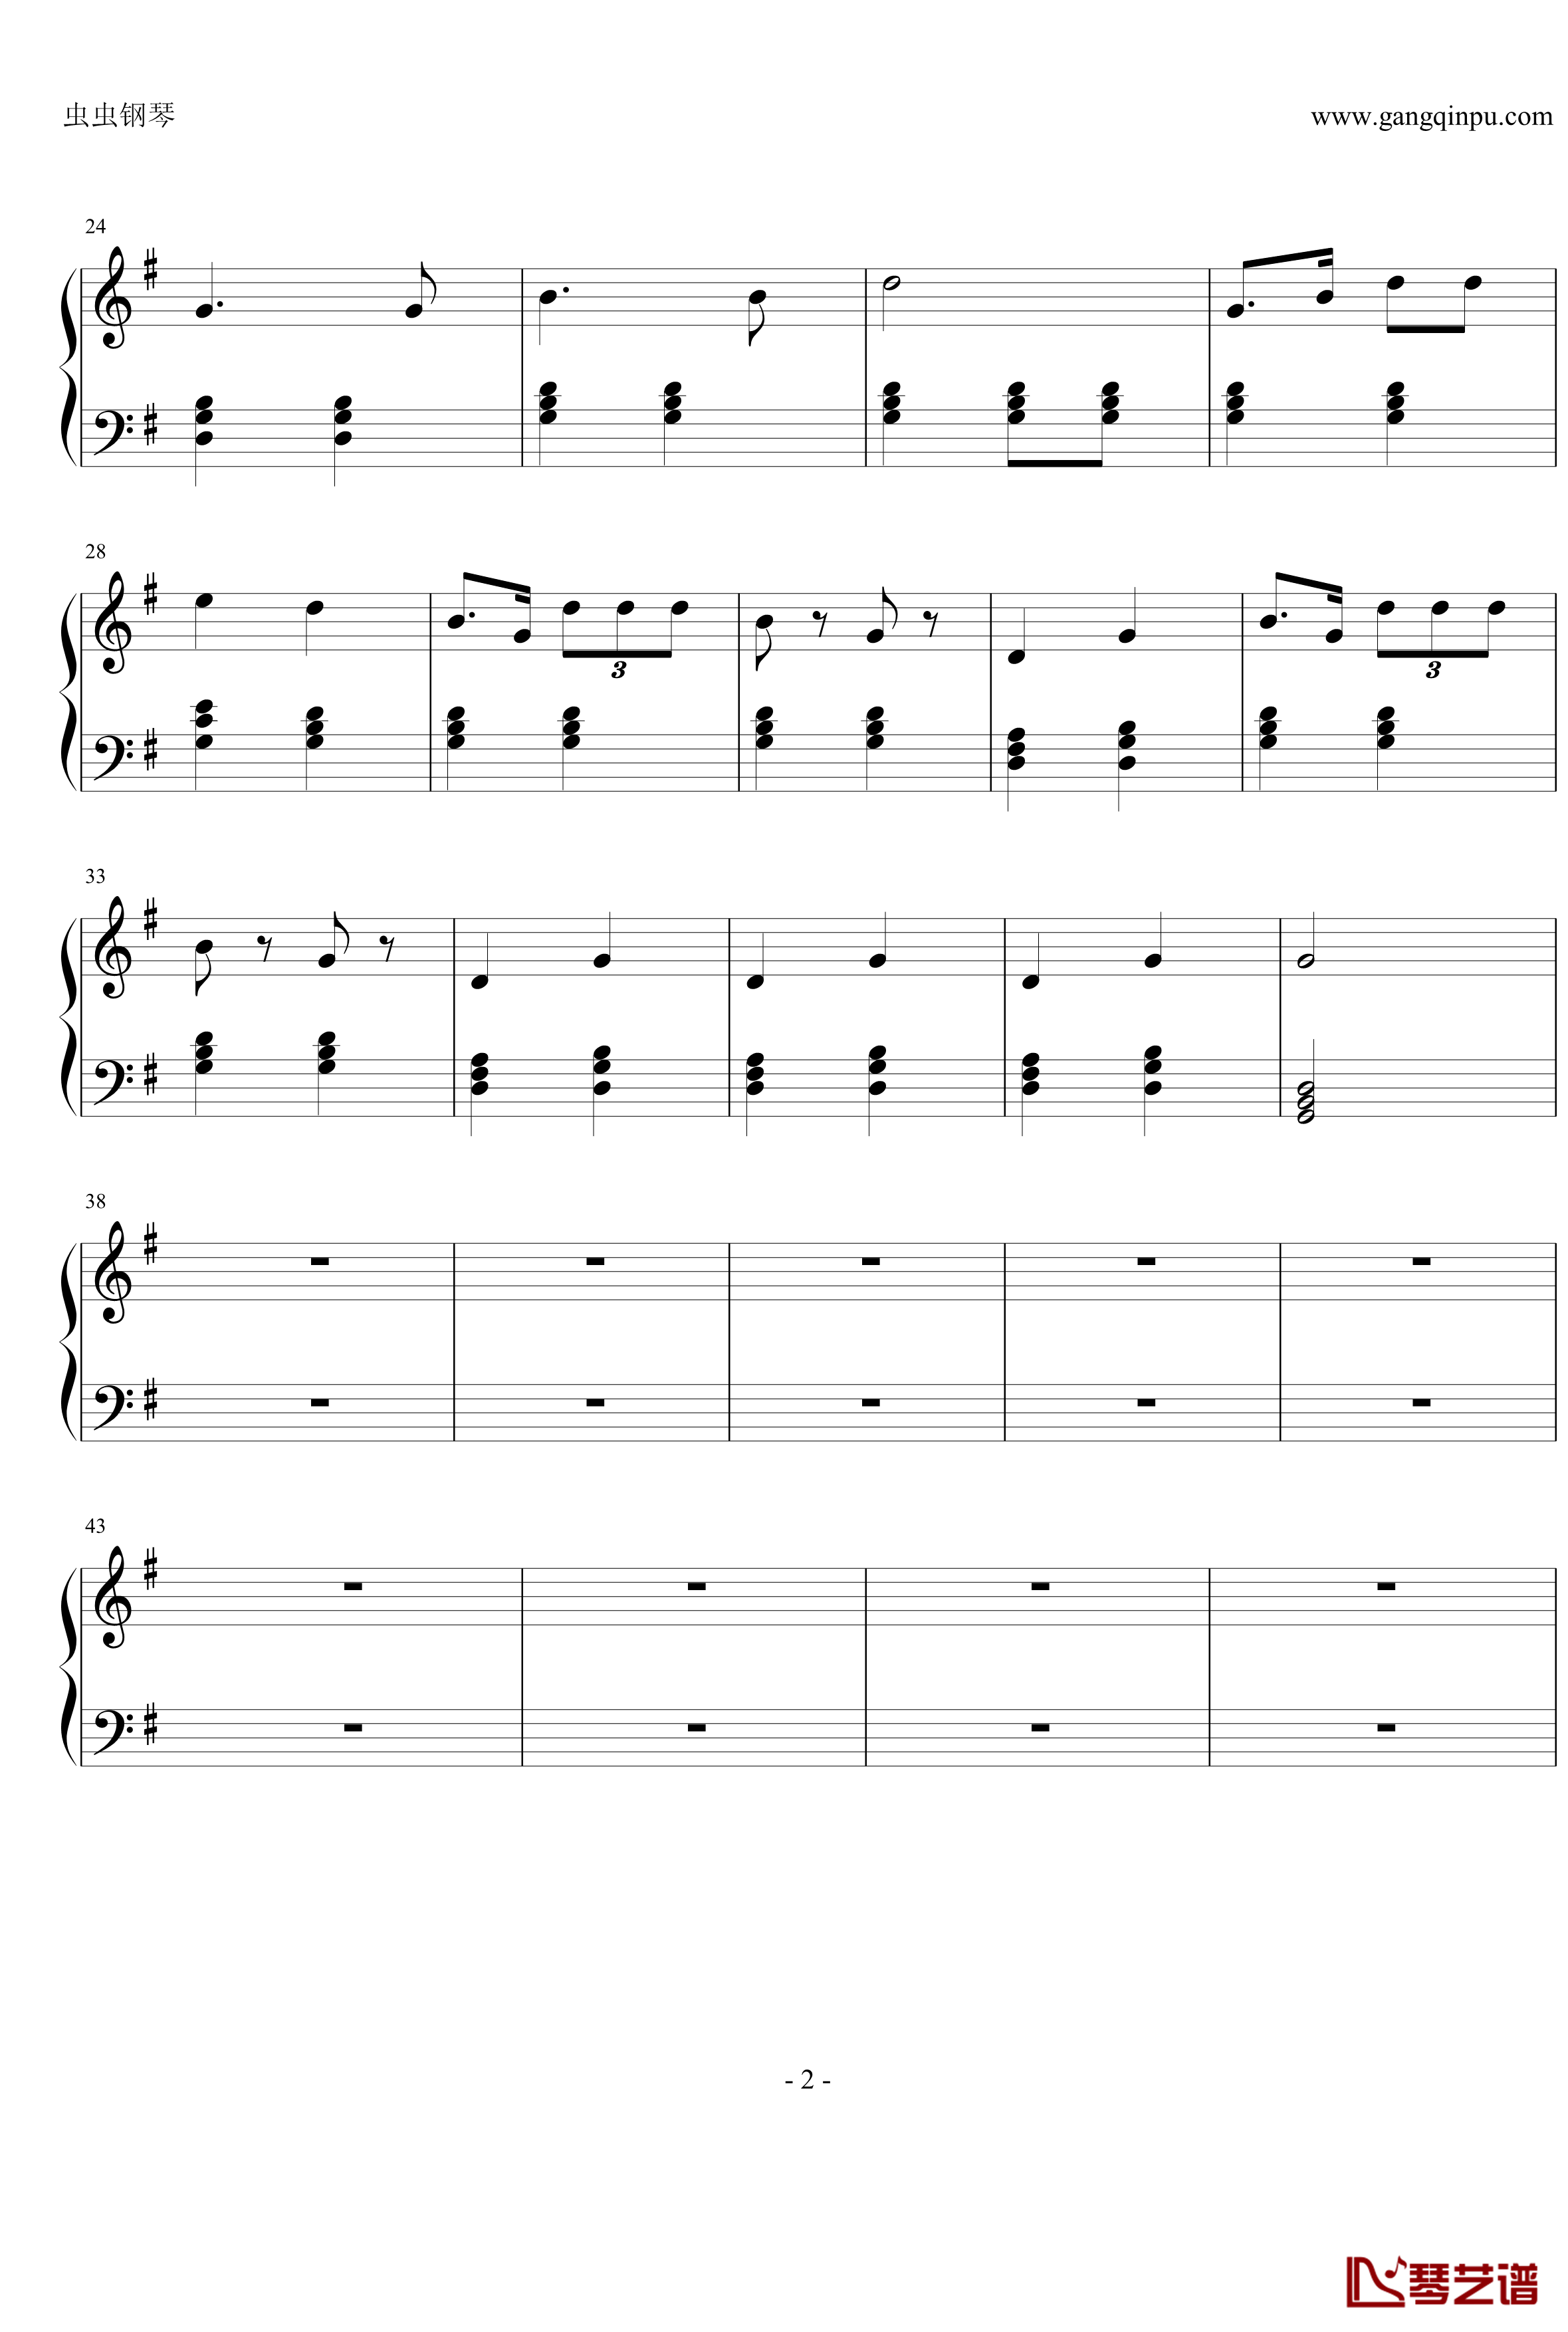 中华人民共和国国歌少儿钢琴谱-简单版-聂耳2